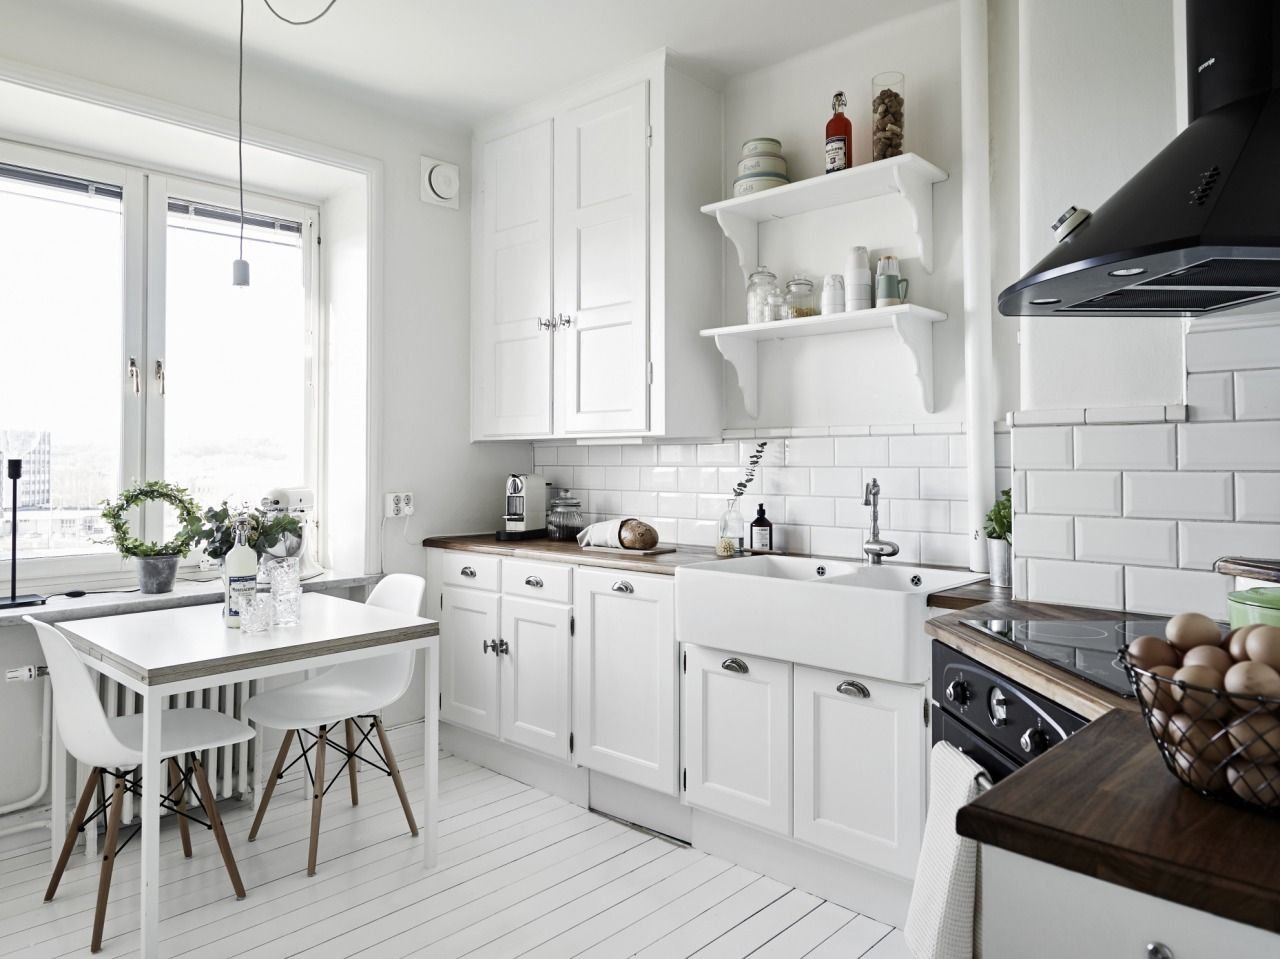 Особенности интерьера кухни в скандинавском стиле (60+ реальных фото)